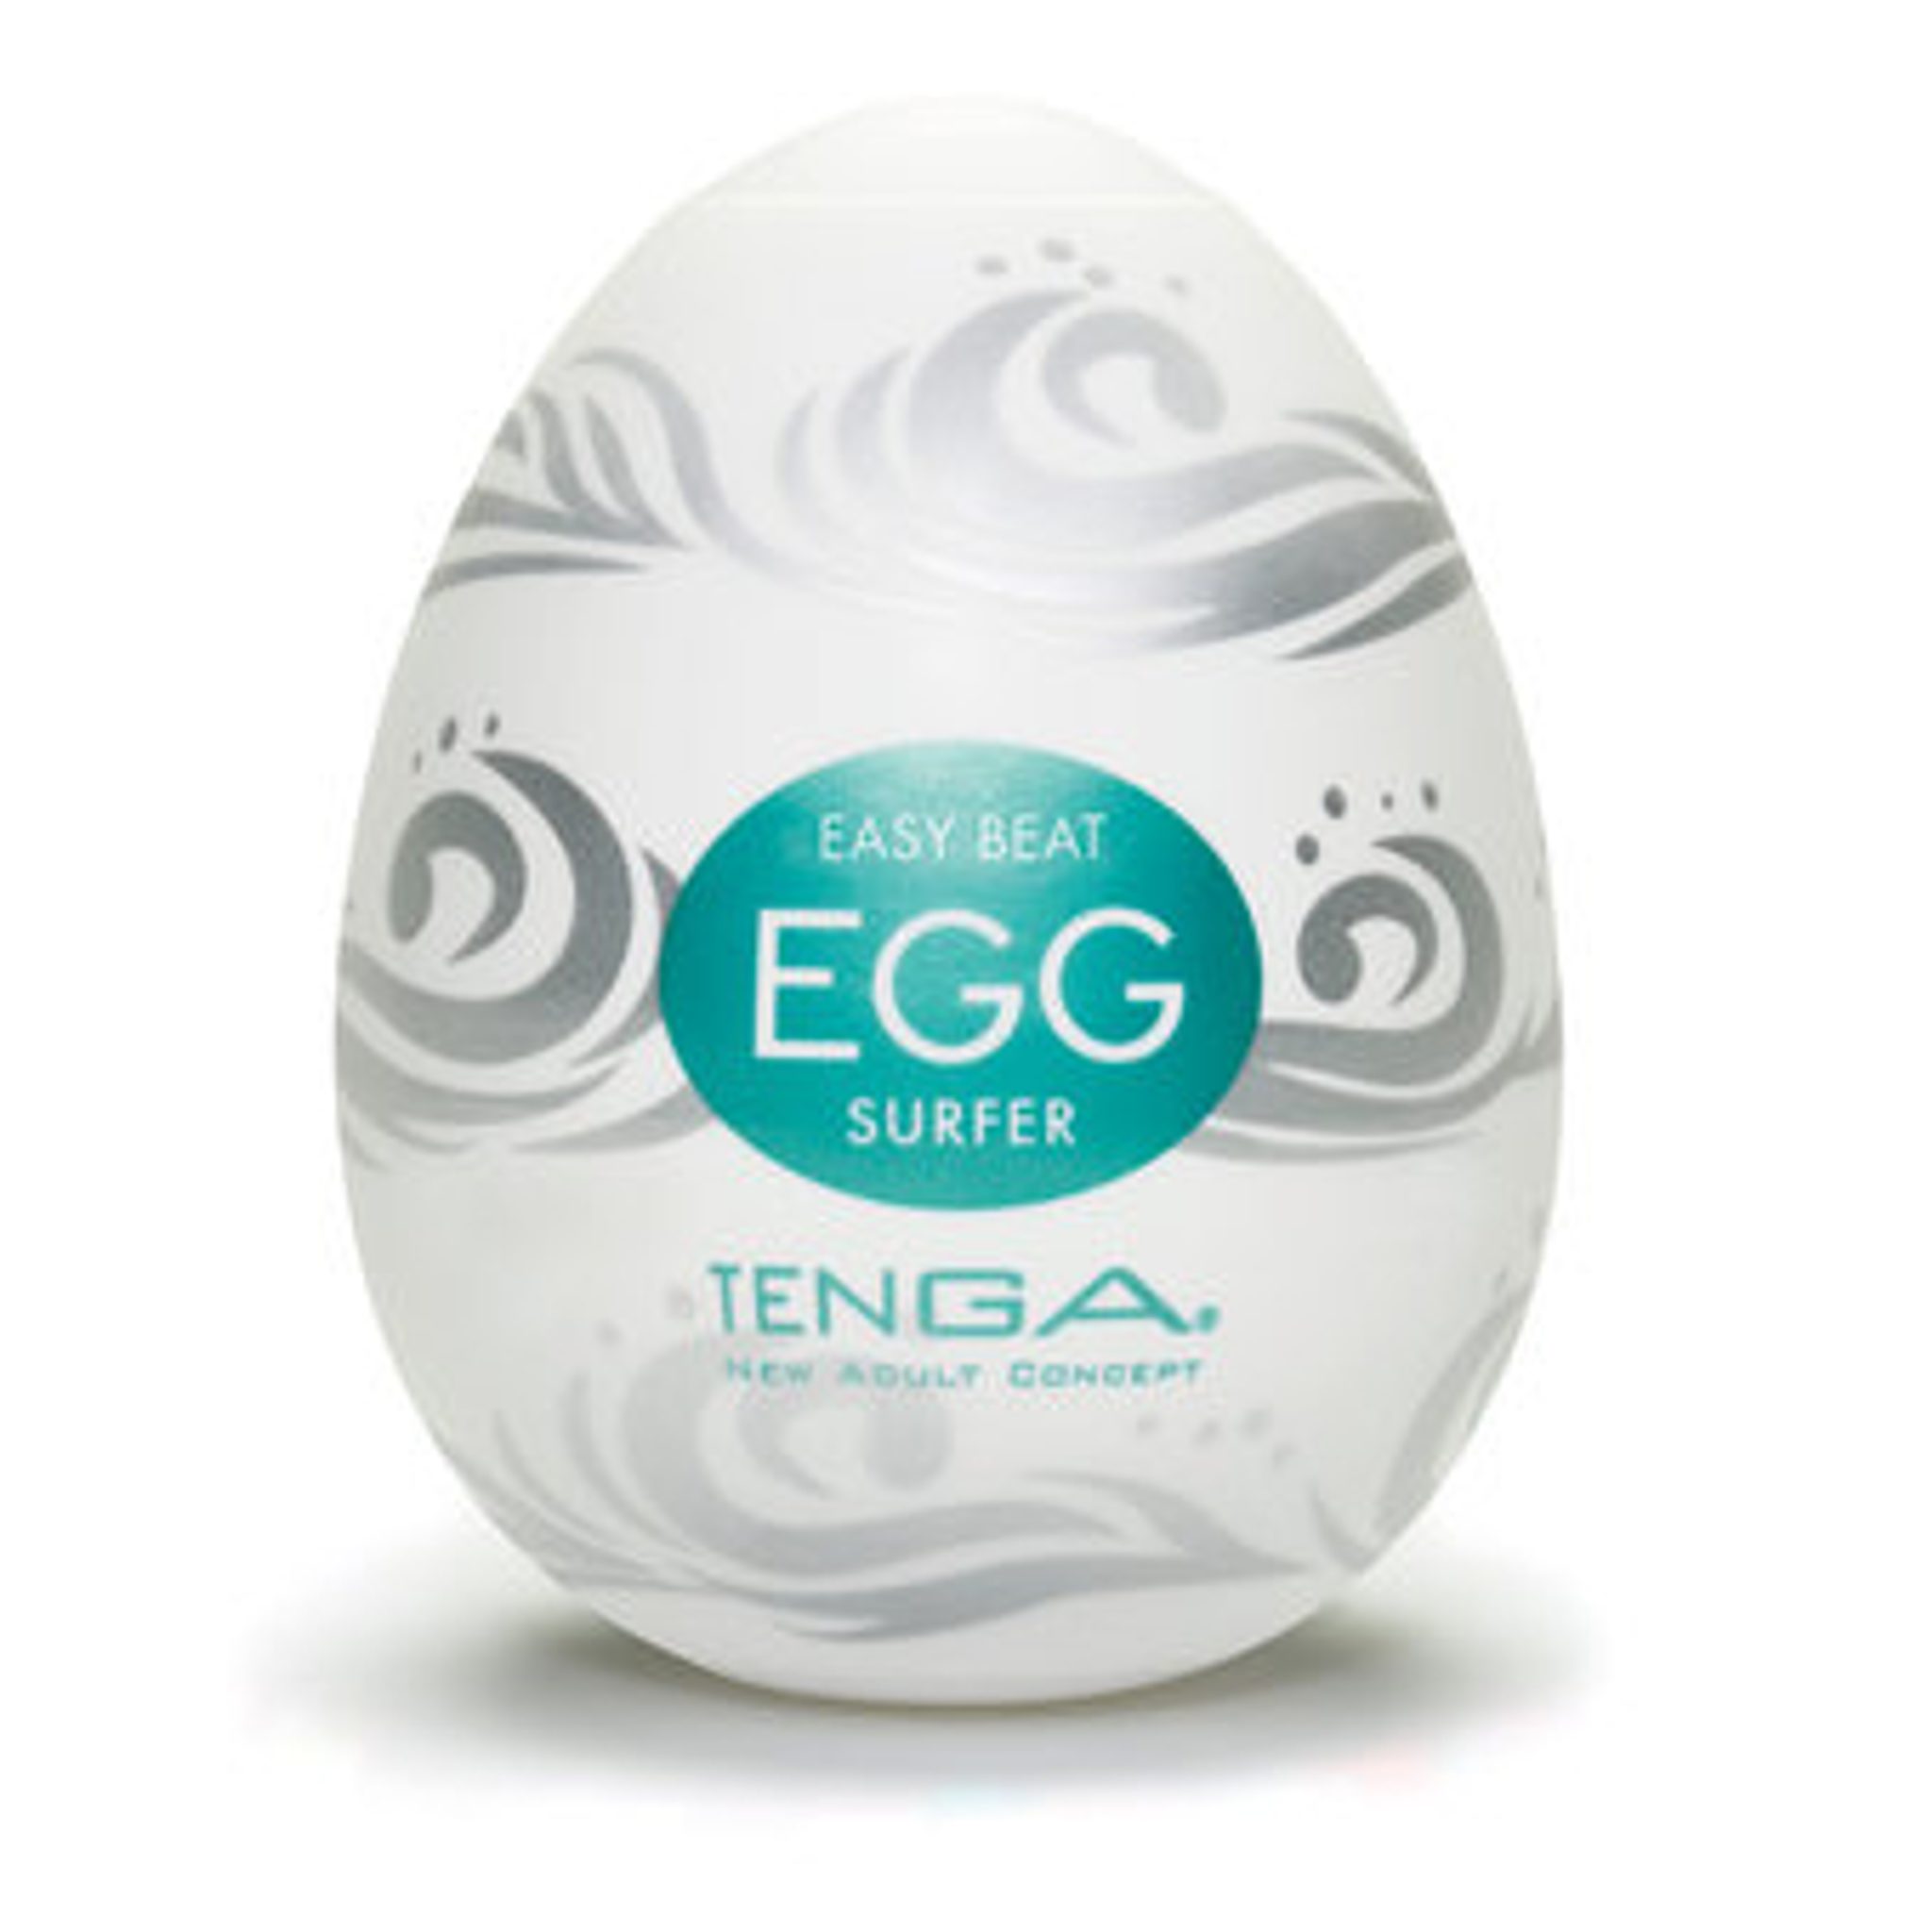 Tenga Egg Surfer-new